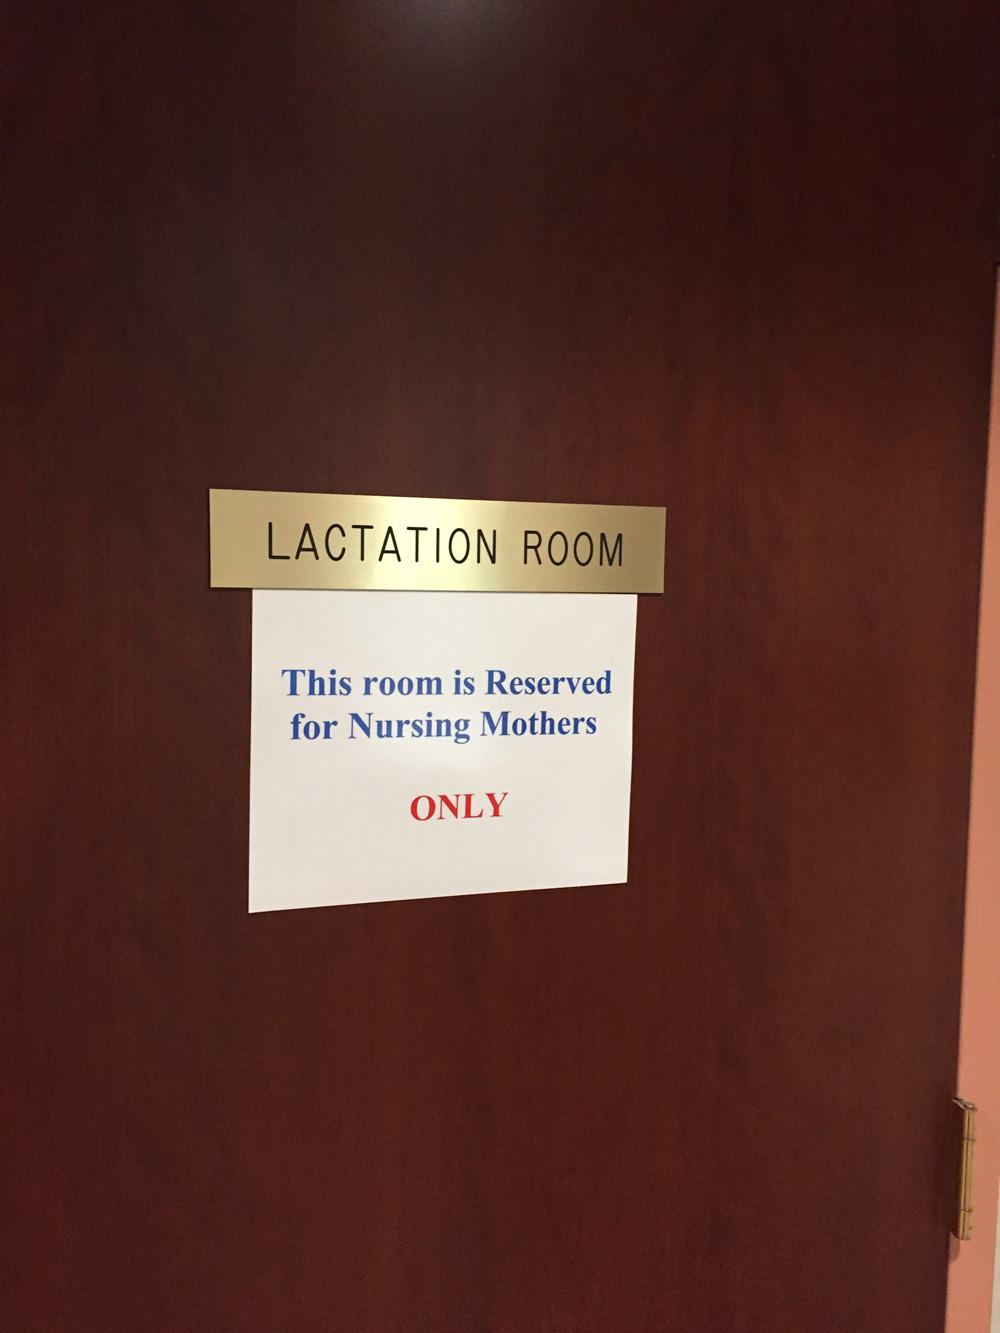 Connecticut Legislative Offices lactation room